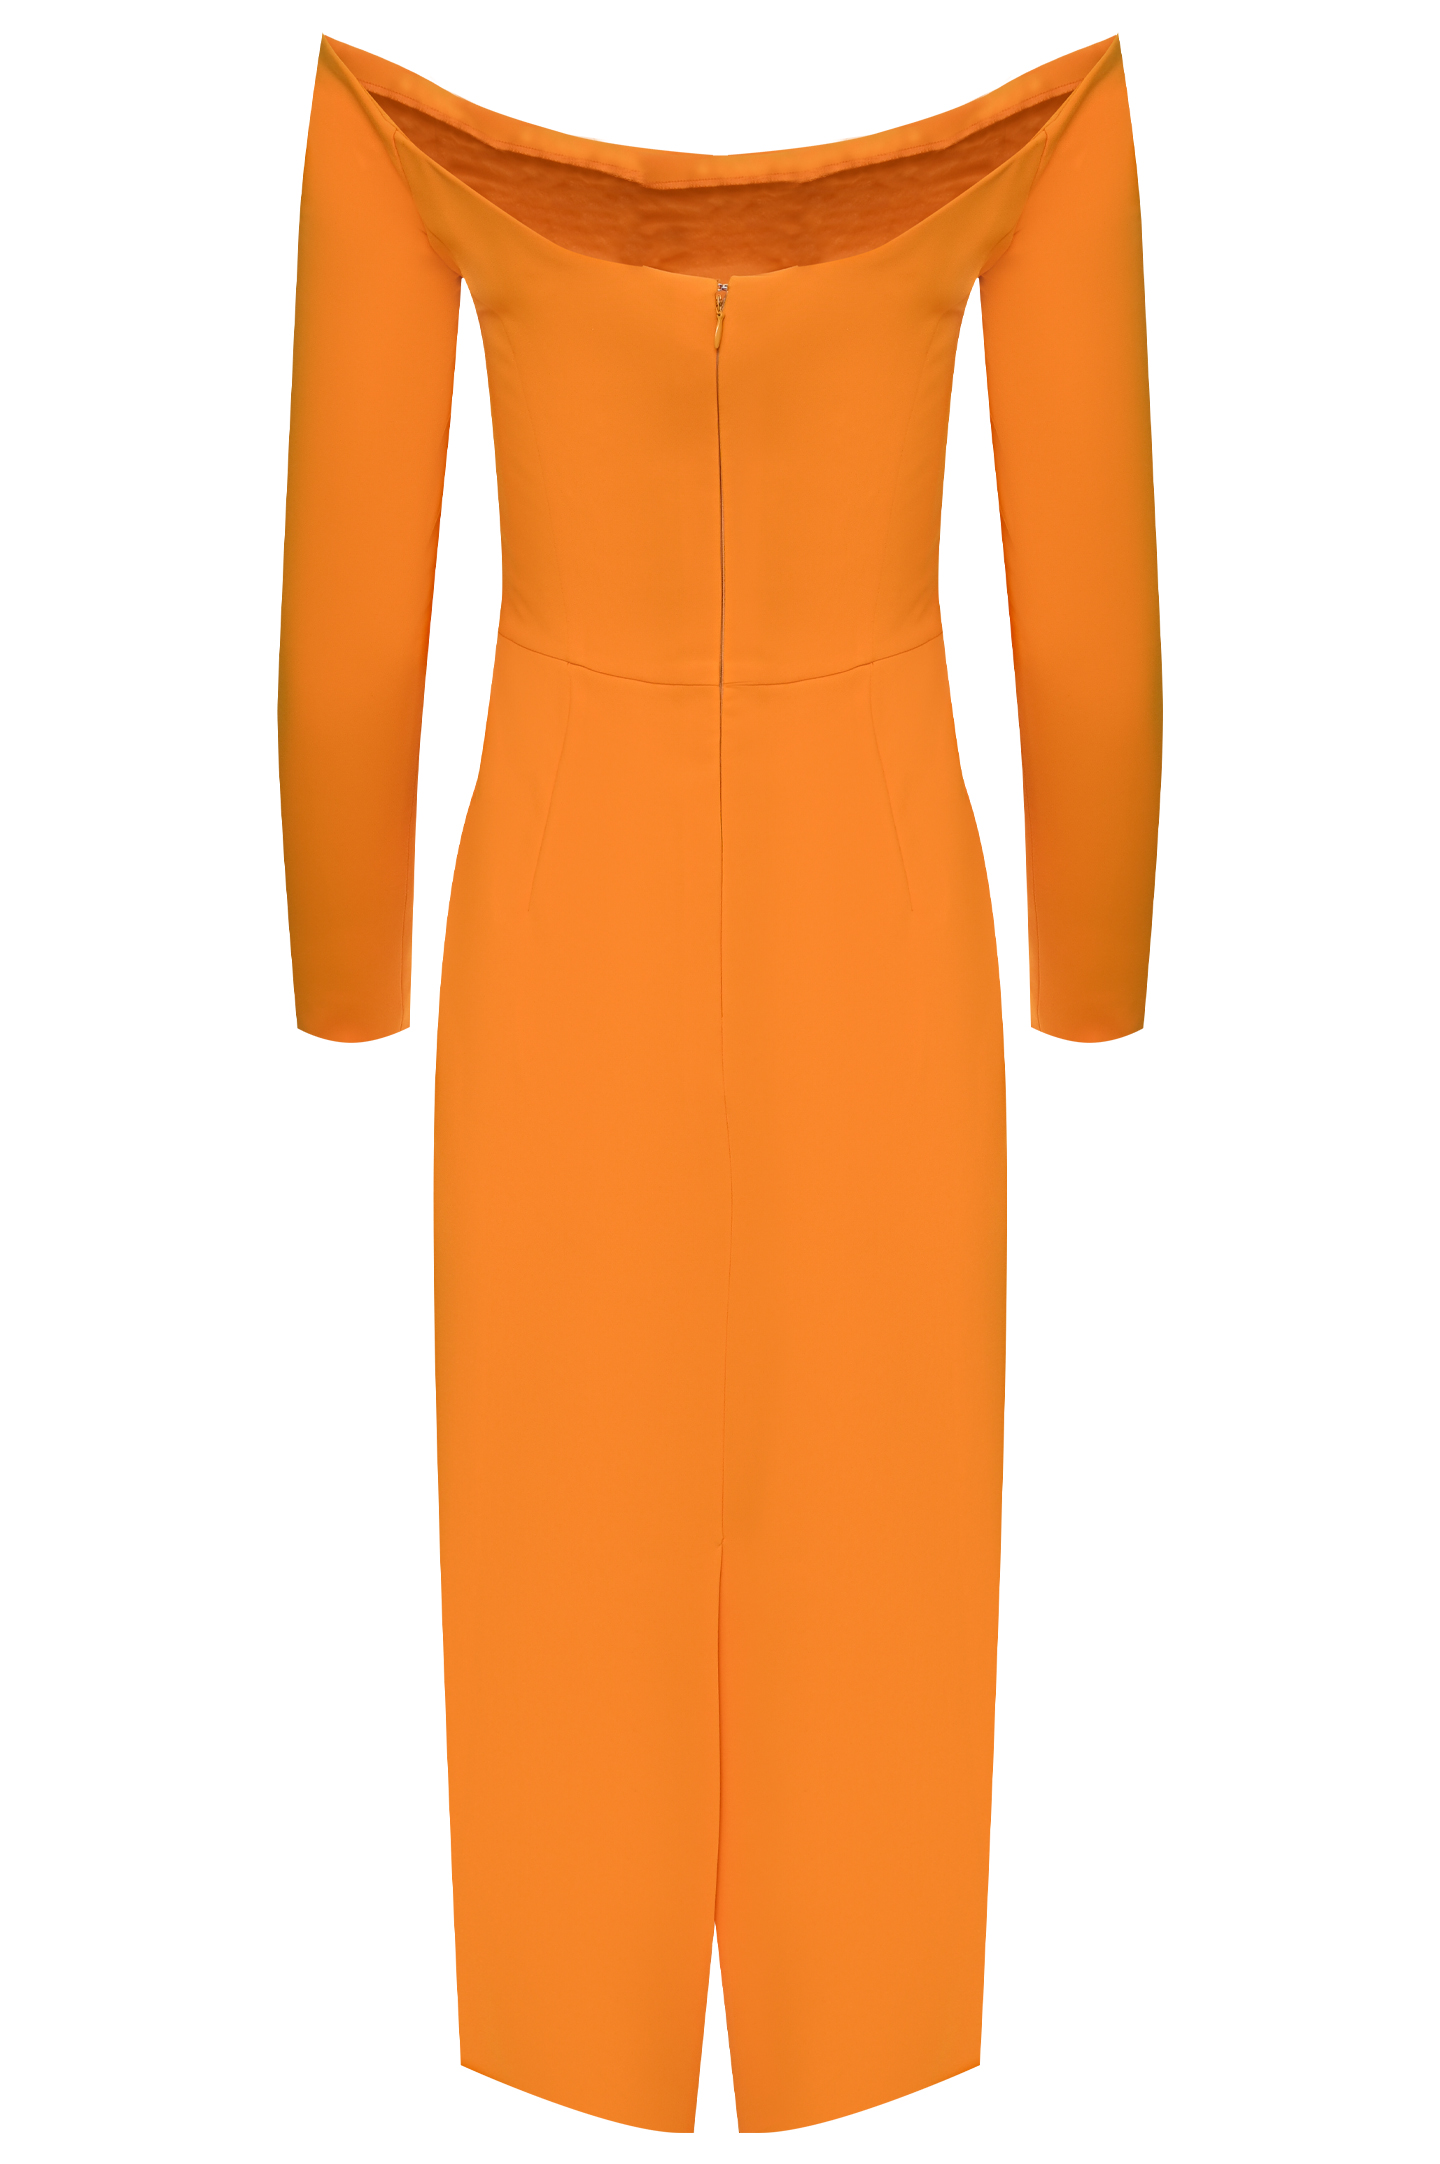 Платье CAROLINA HERRERA R2111N508, цвет: Оранжевый, Женский